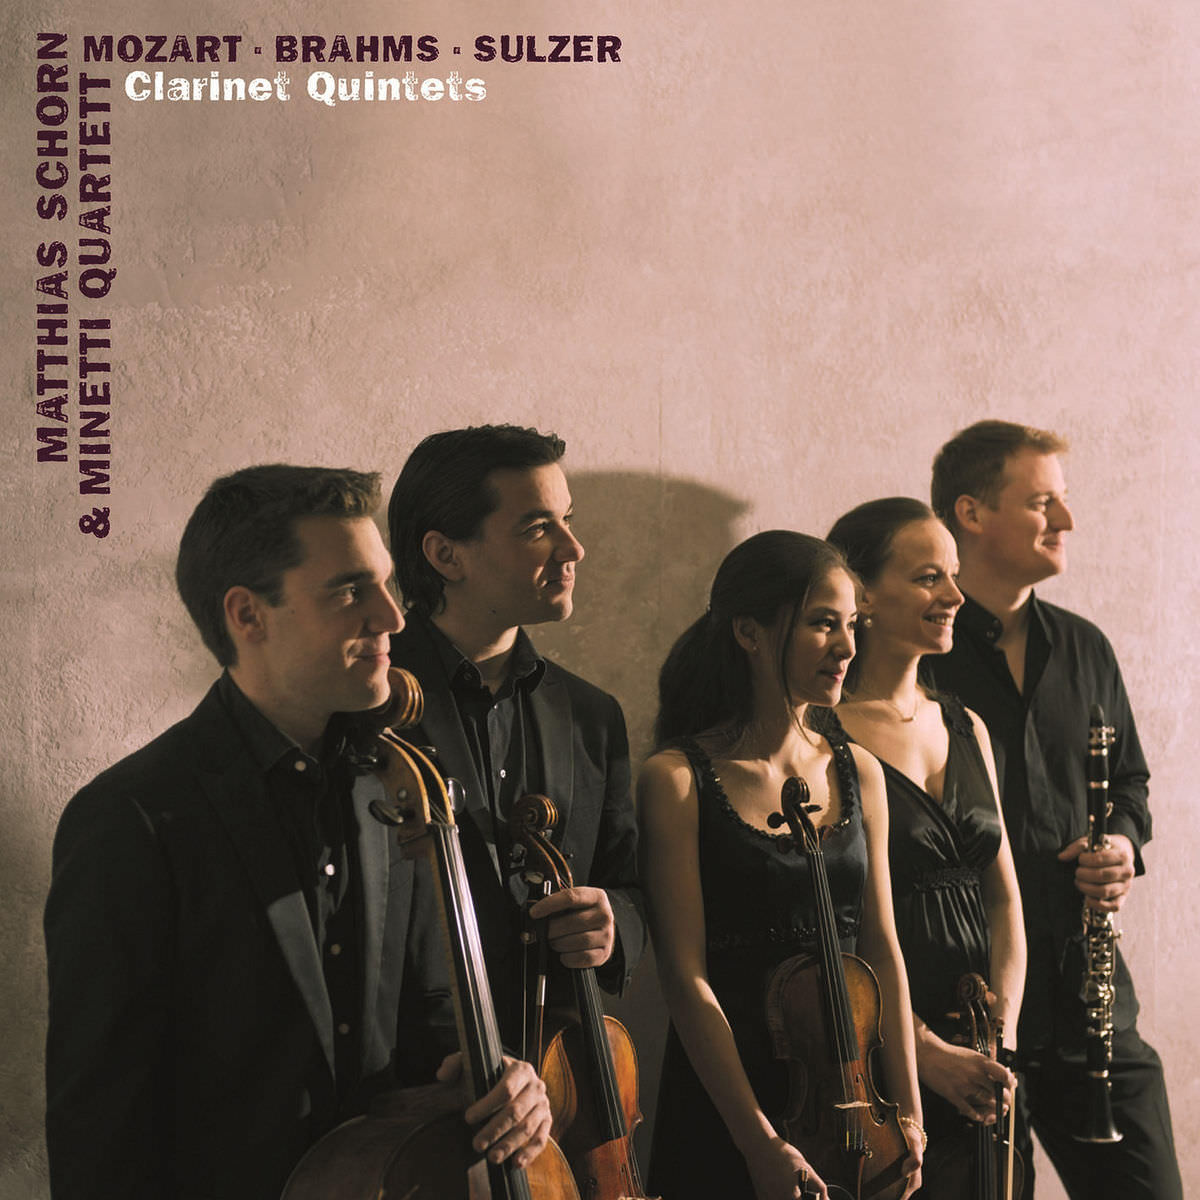 Matthias Schorn & Minetti Quartett - Mozart & Brahms & Sulzer: Clarinet Quintets (2013) [FLAC 24bit/44,1kHz]